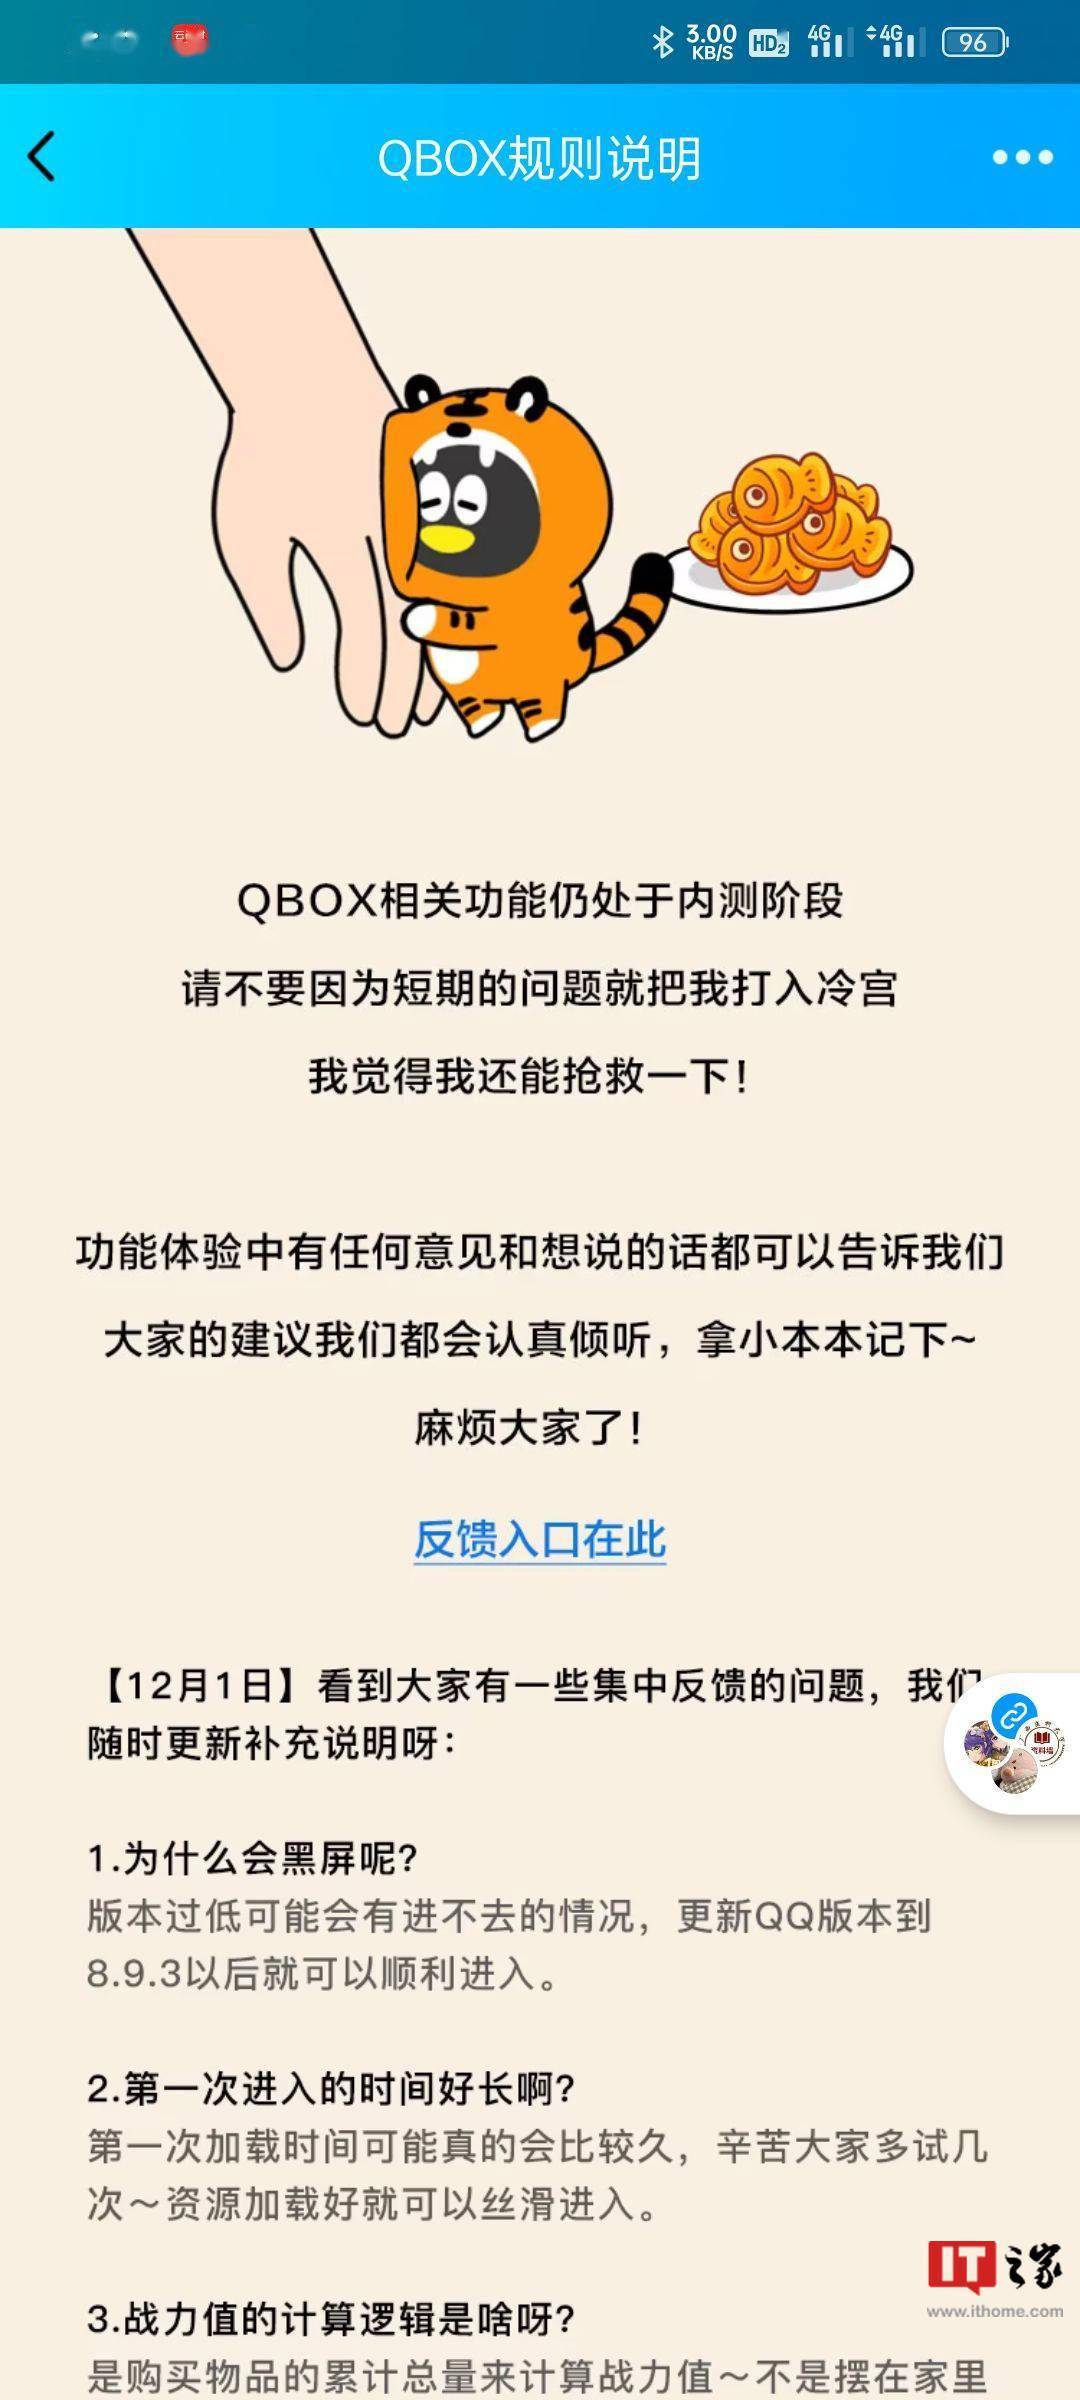 QQ 内测新功能 “QBOX”：装扮个性 Q 崽，还可与好友战斗